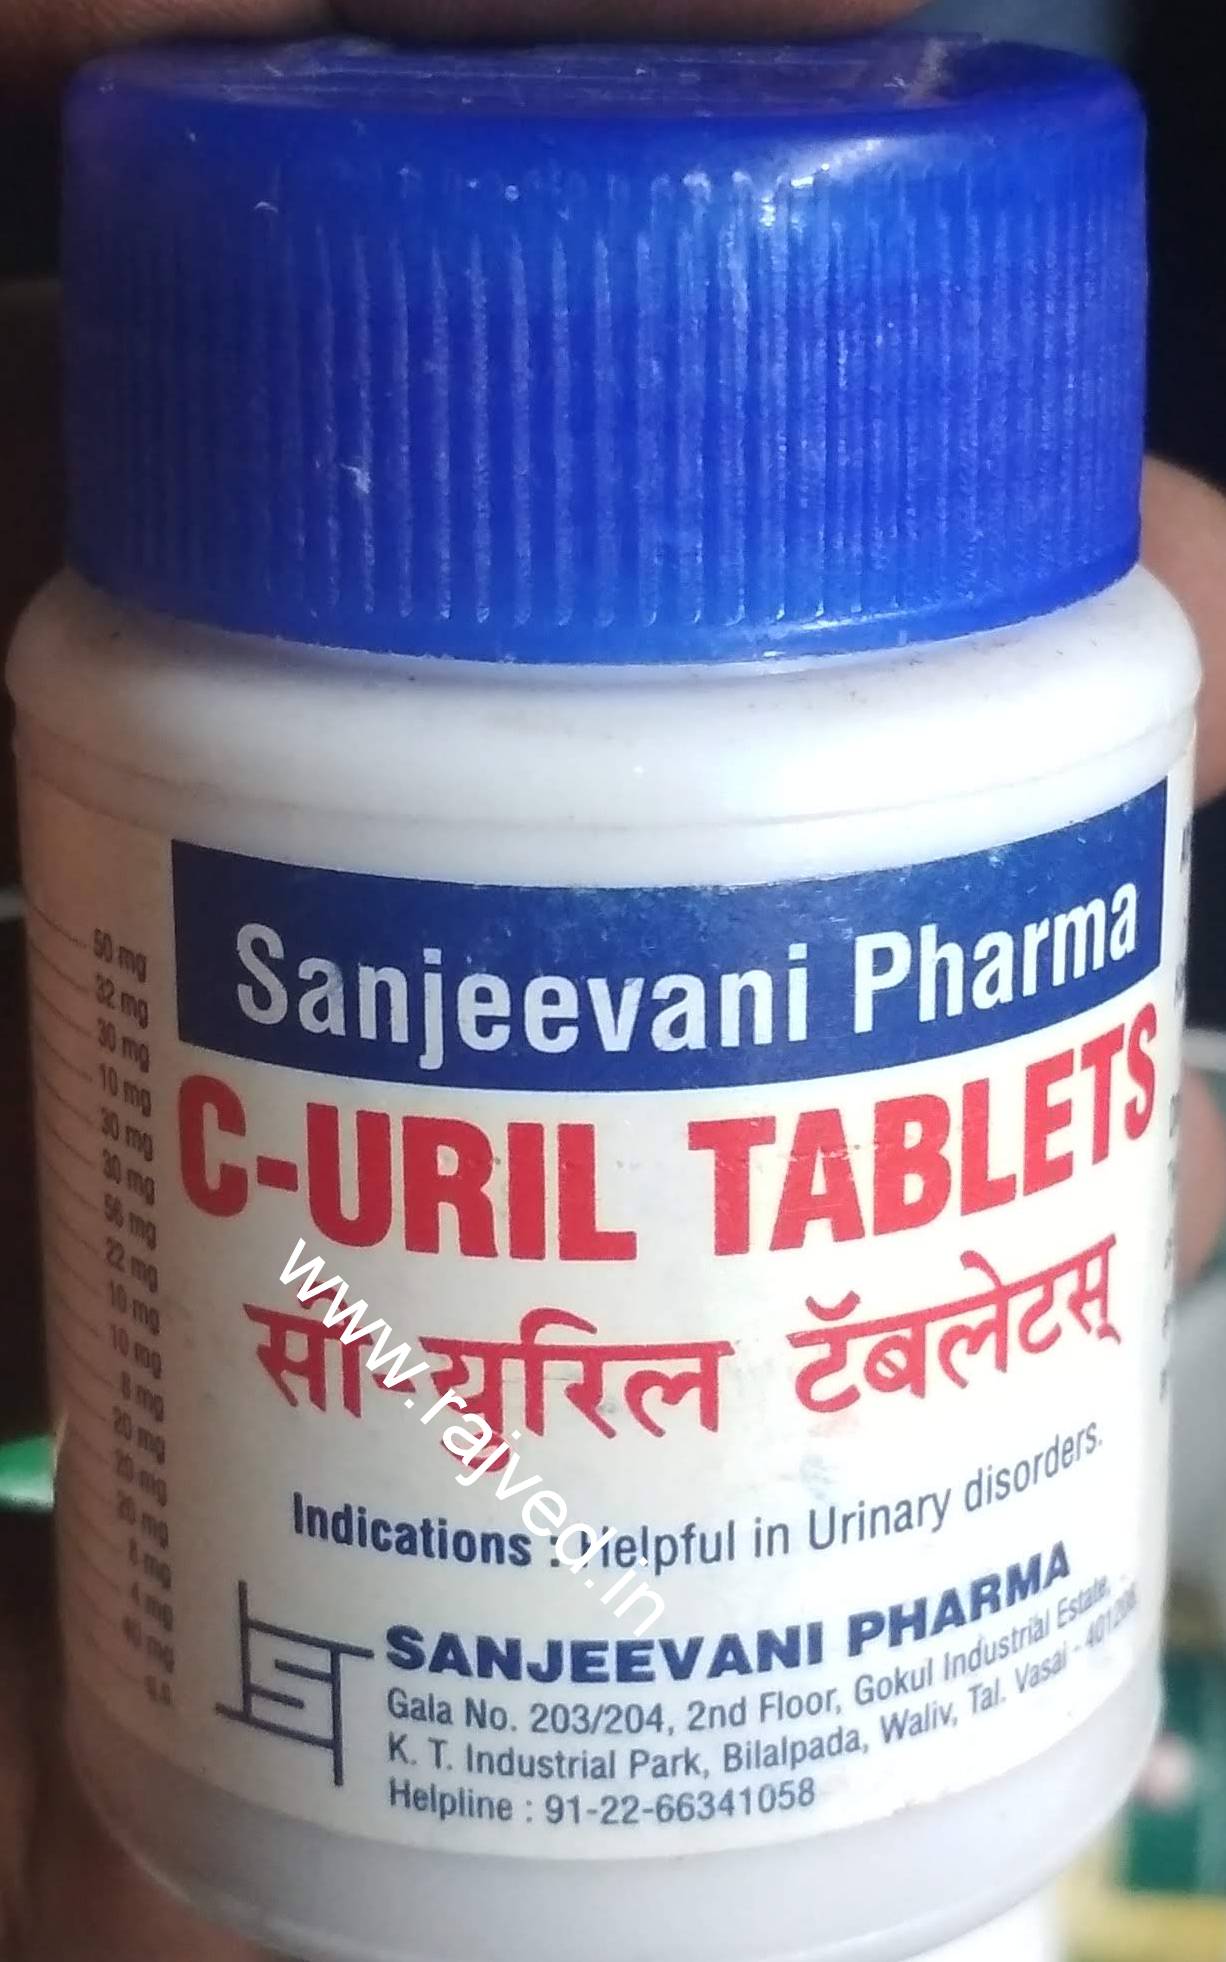 C-uril 500tab upto 20% off sanjeevani pharma mumbai